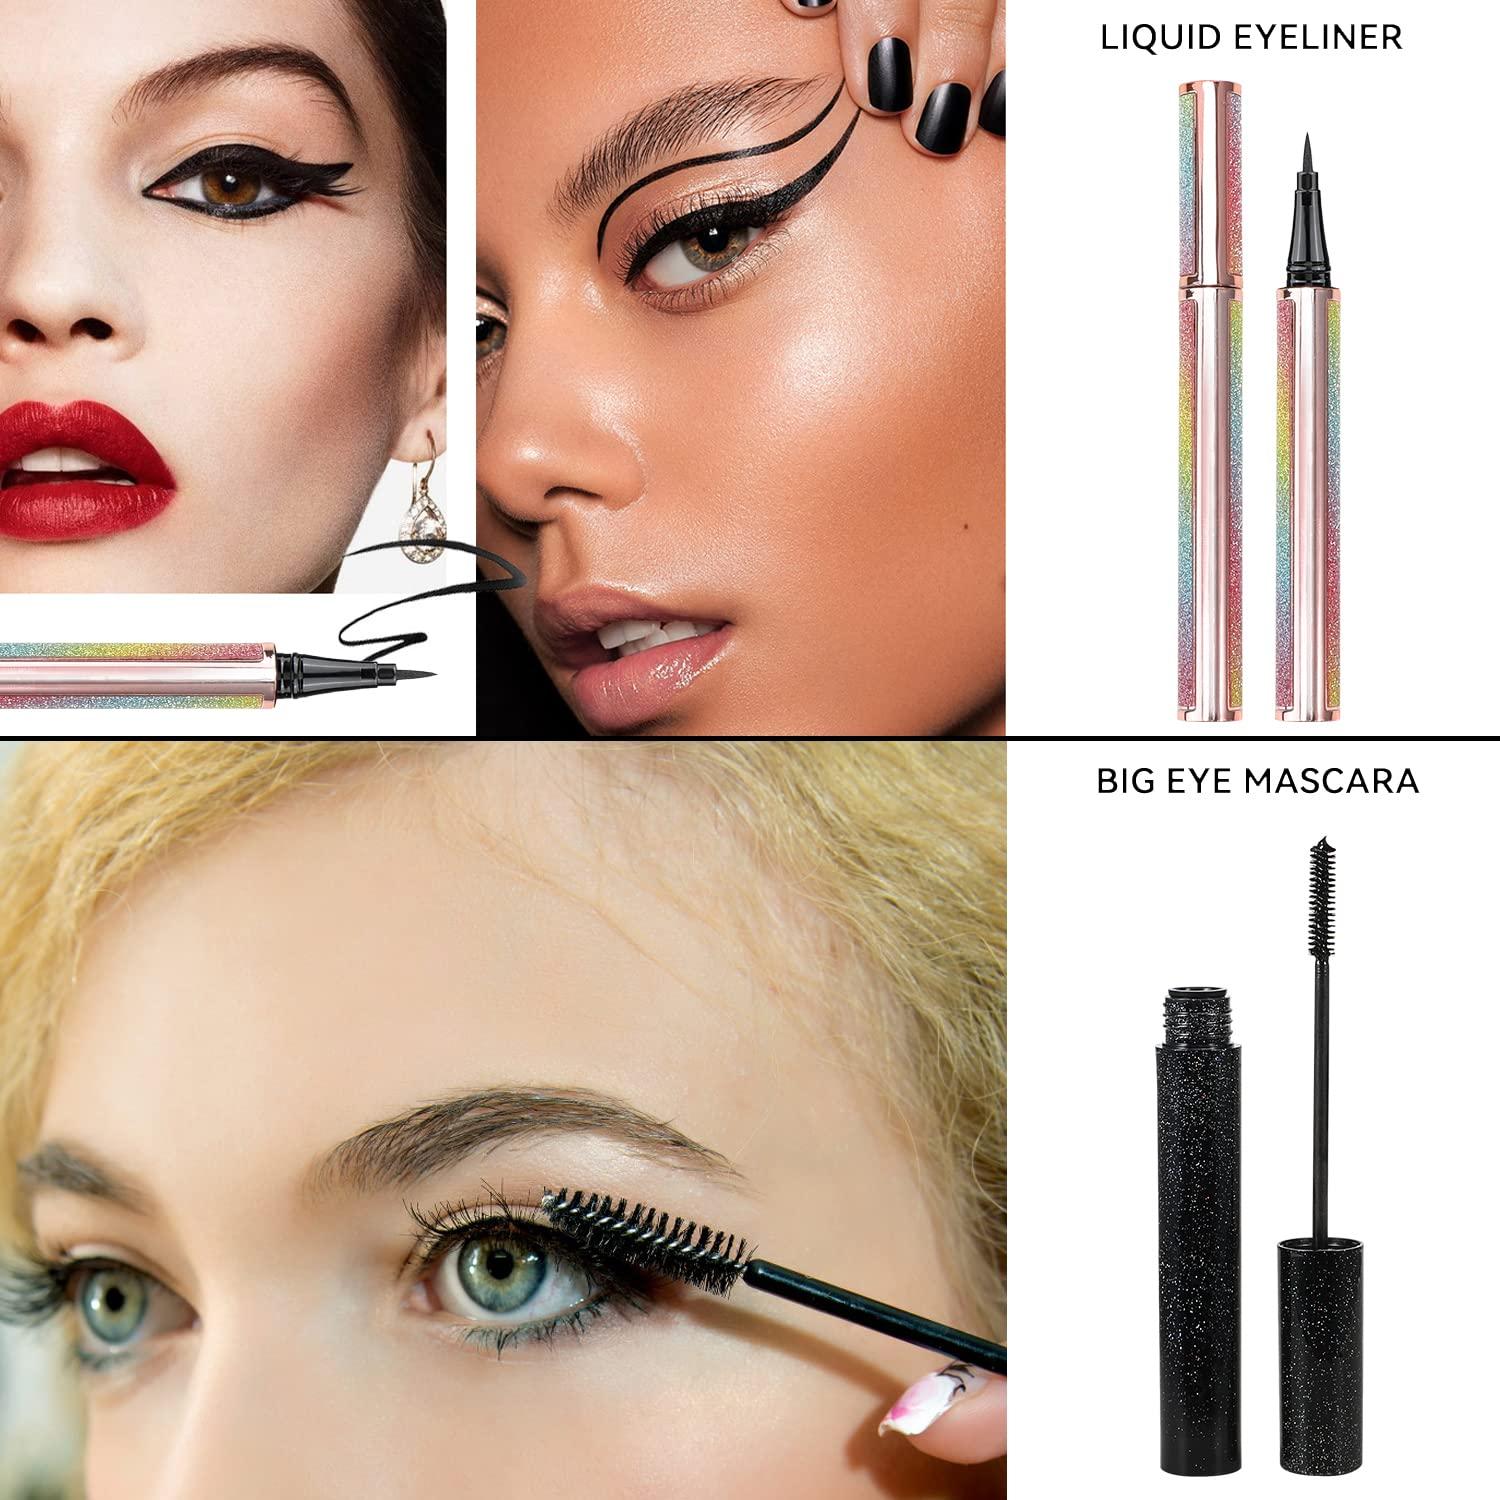  Makeup Kit for Women Full Kit, All-in-one Makeup Set